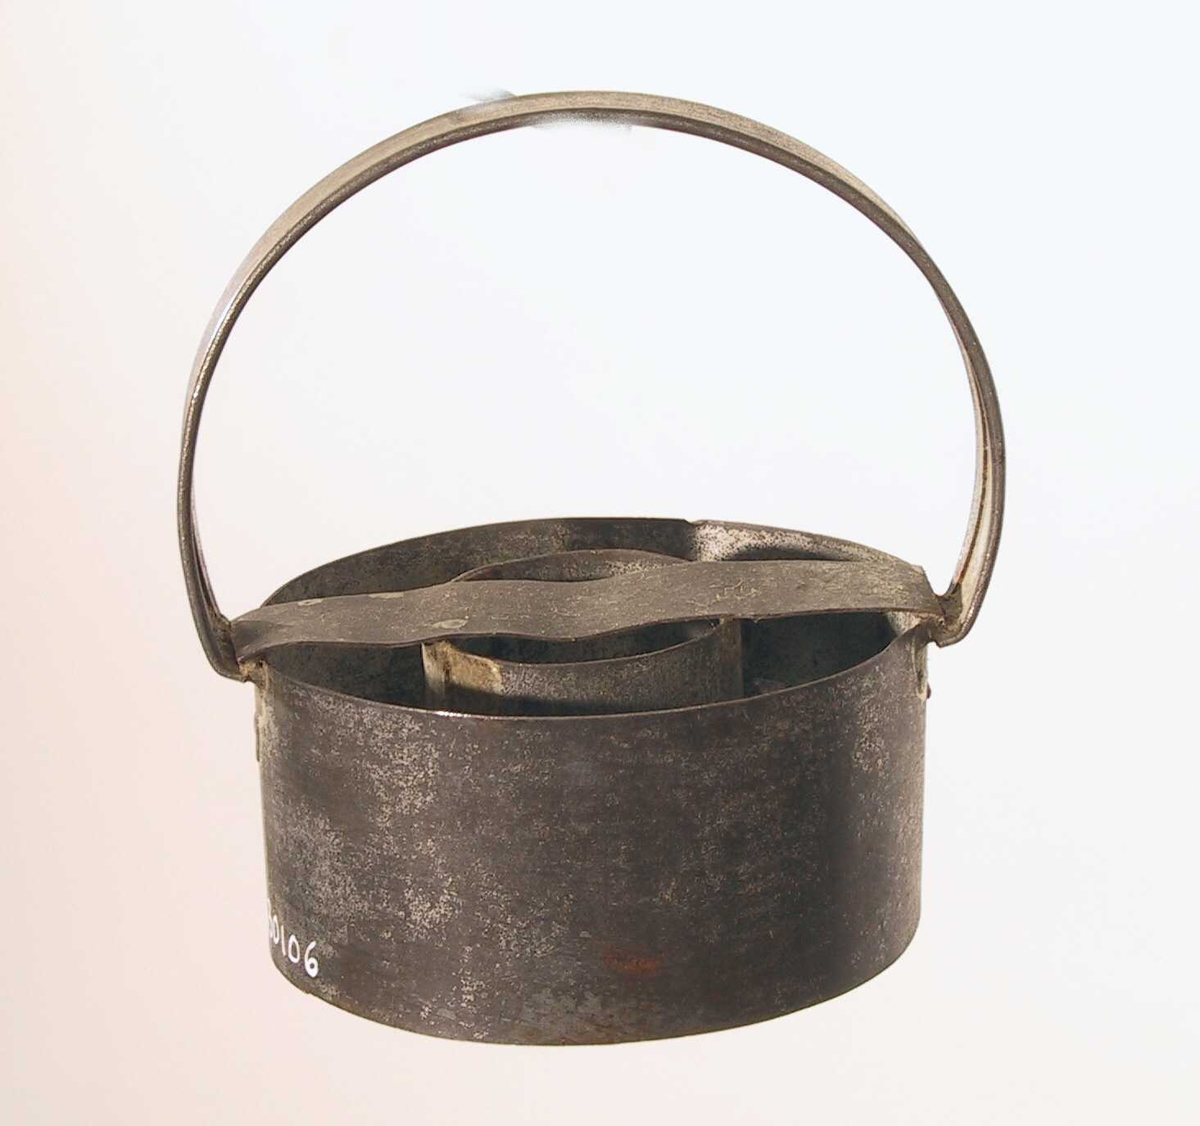 Liten sylinder av tynn jernplate med en større utenfor, festet sammen med et bånd av jern på tvers over begge og et håndtak festet ved hver ende av båndet. 
